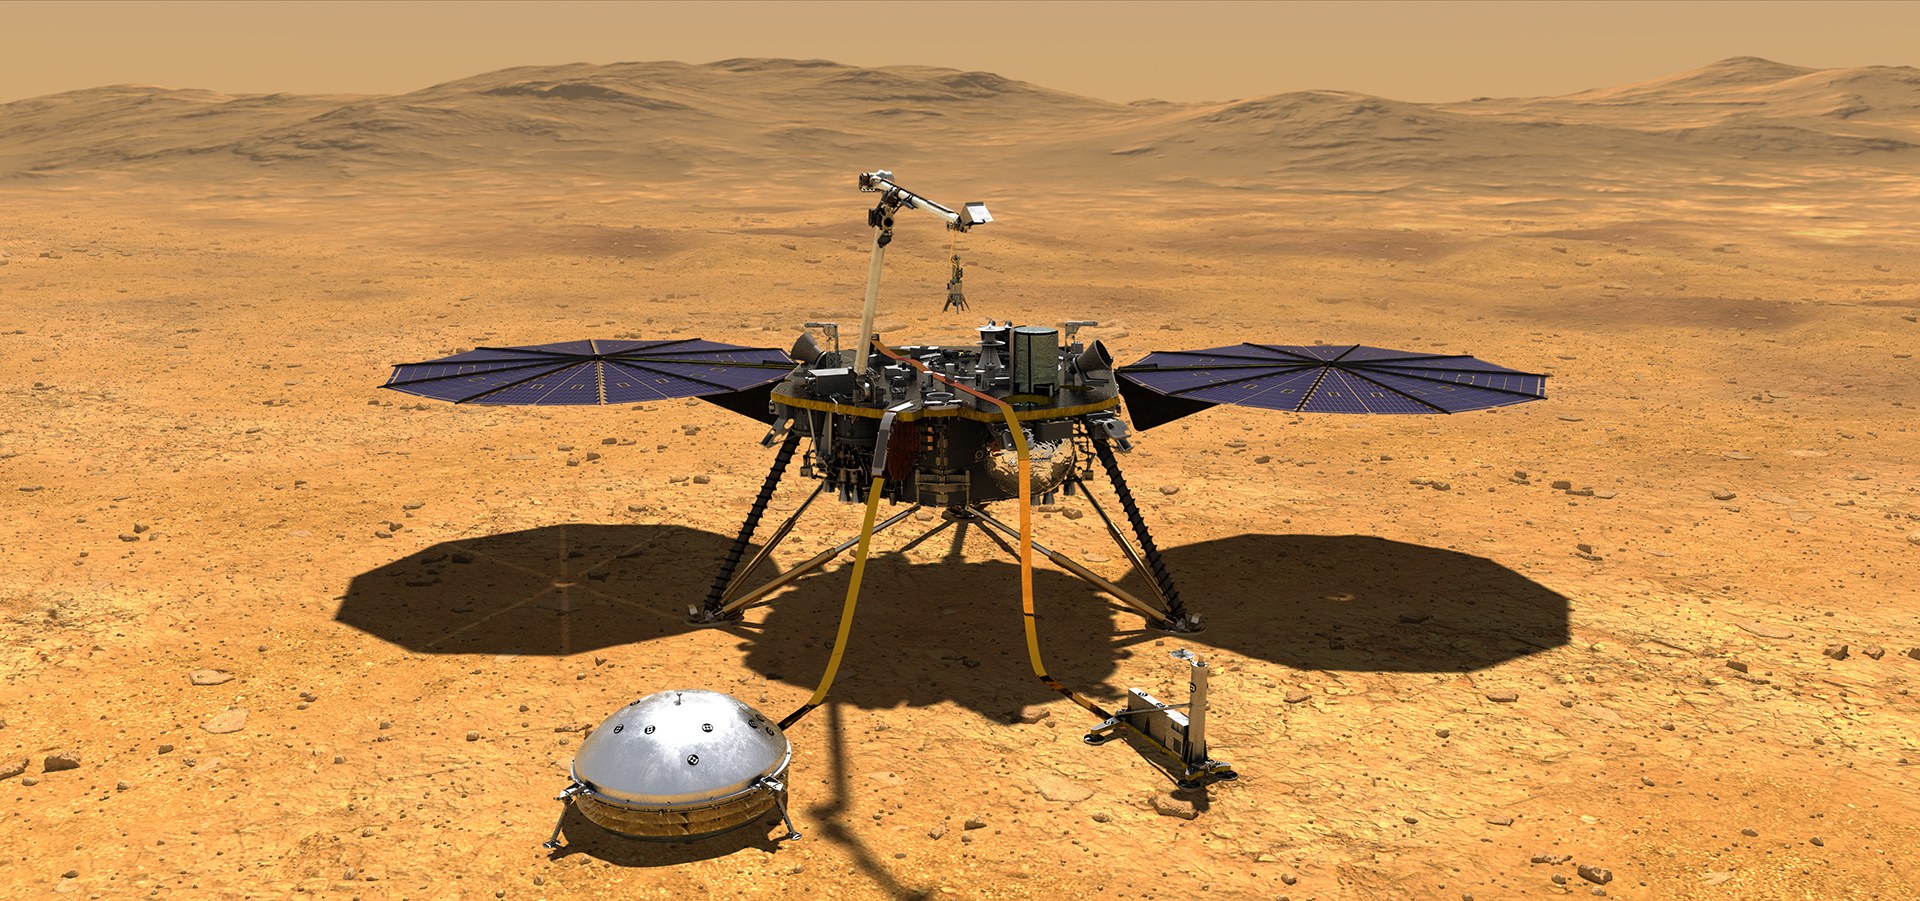 NASA's InSight lander on Mars